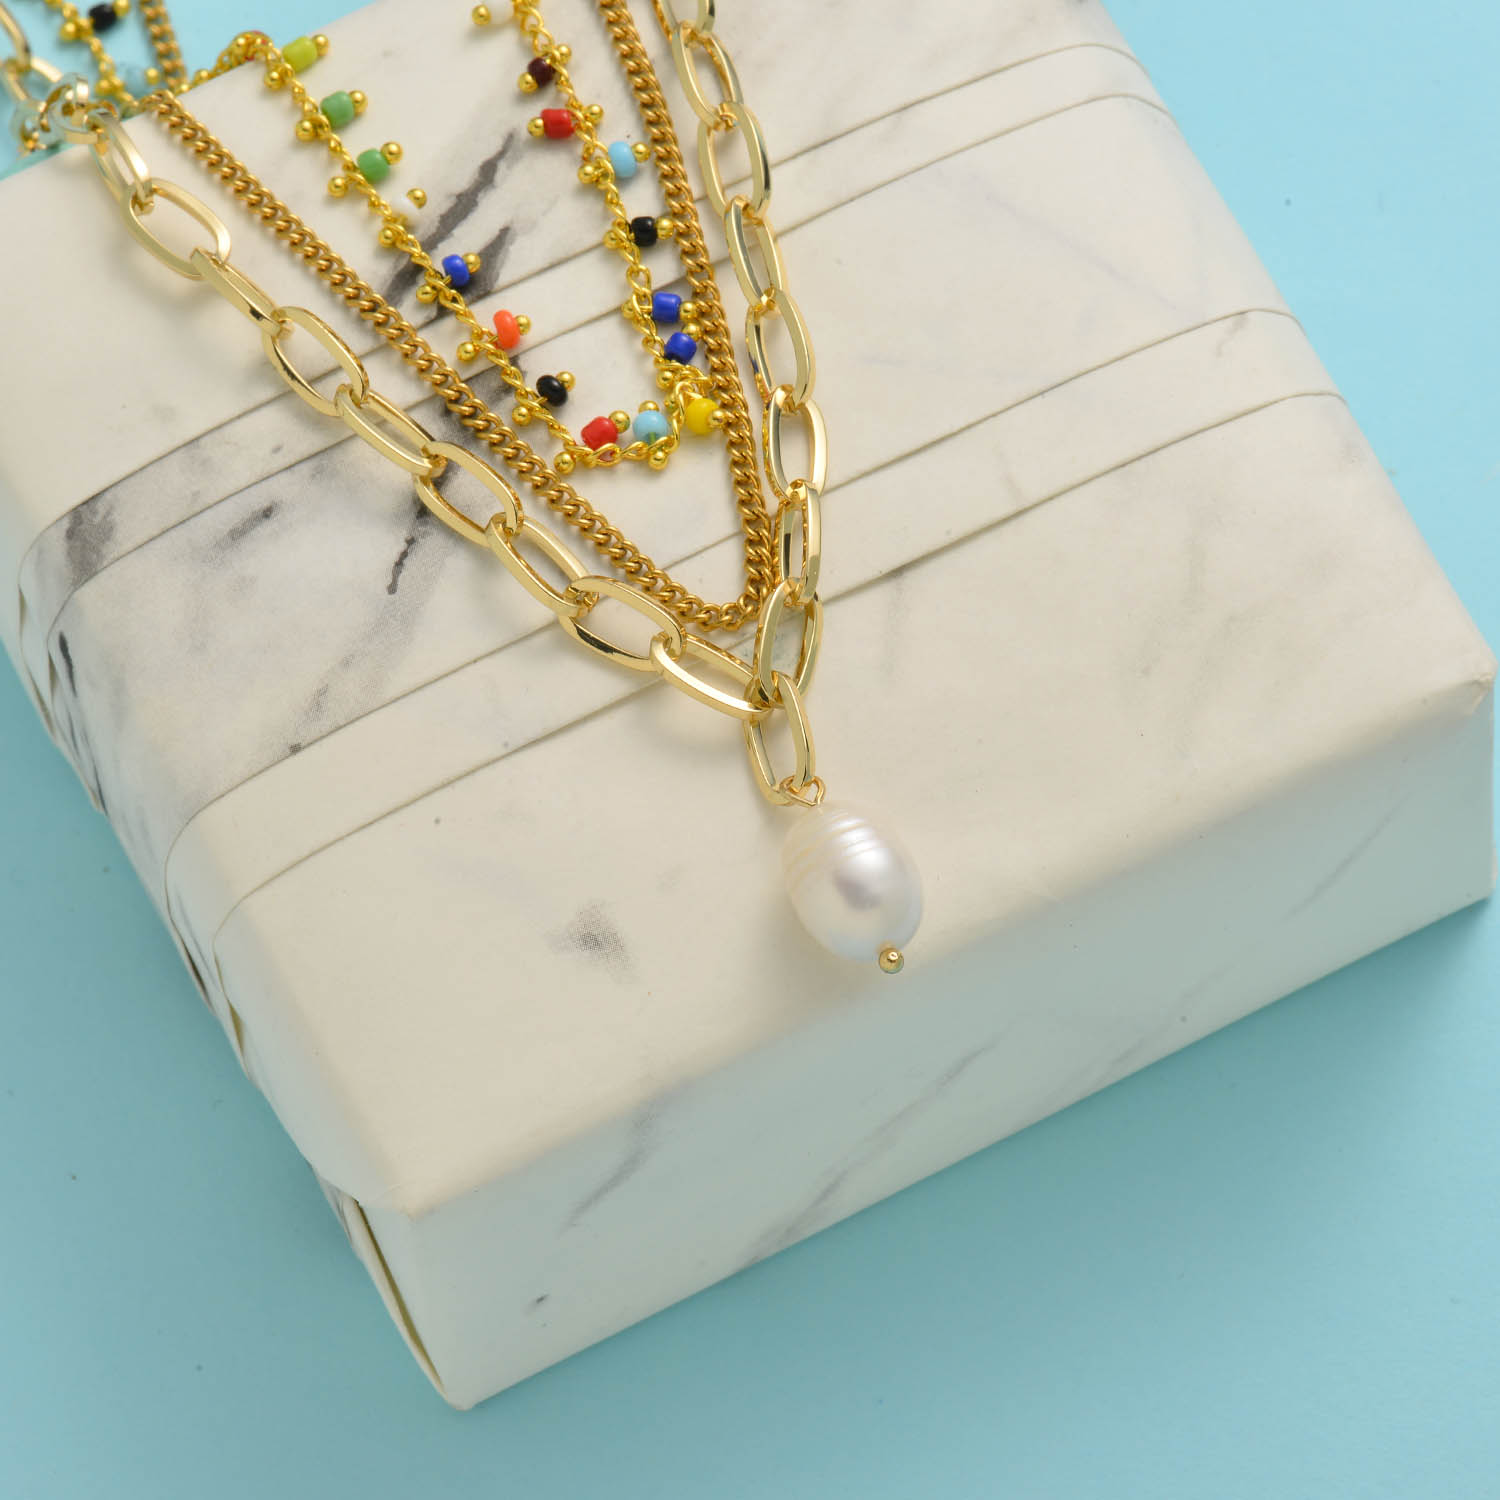 collares aesthetic acero inoxidable 18k con colgante de perla natura por mayor